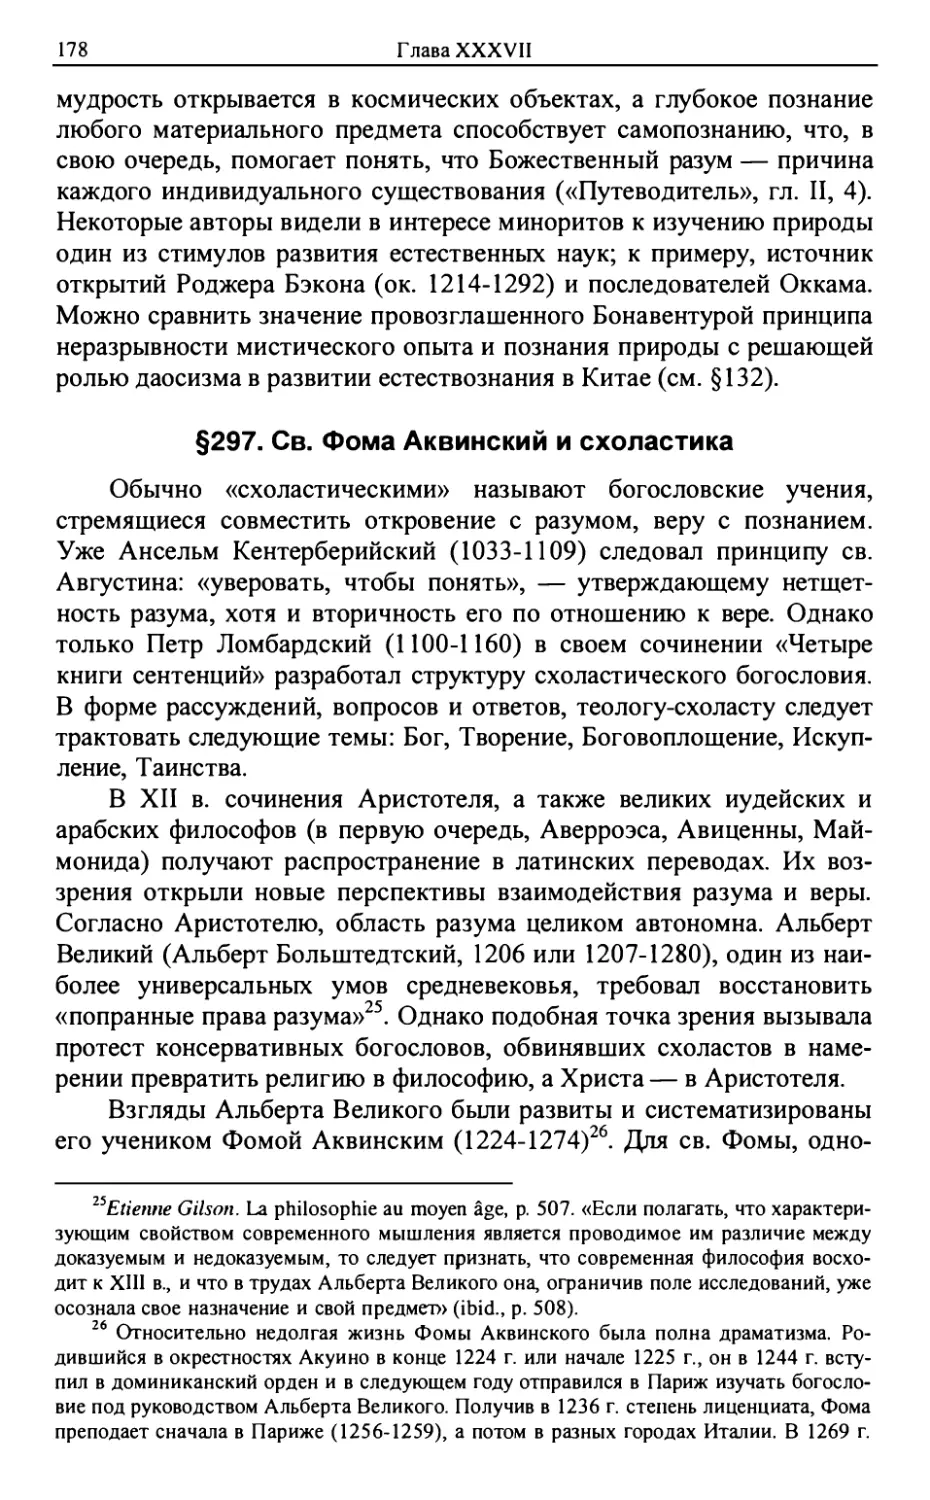 §297. Св. Фома Аквинский и схоластика